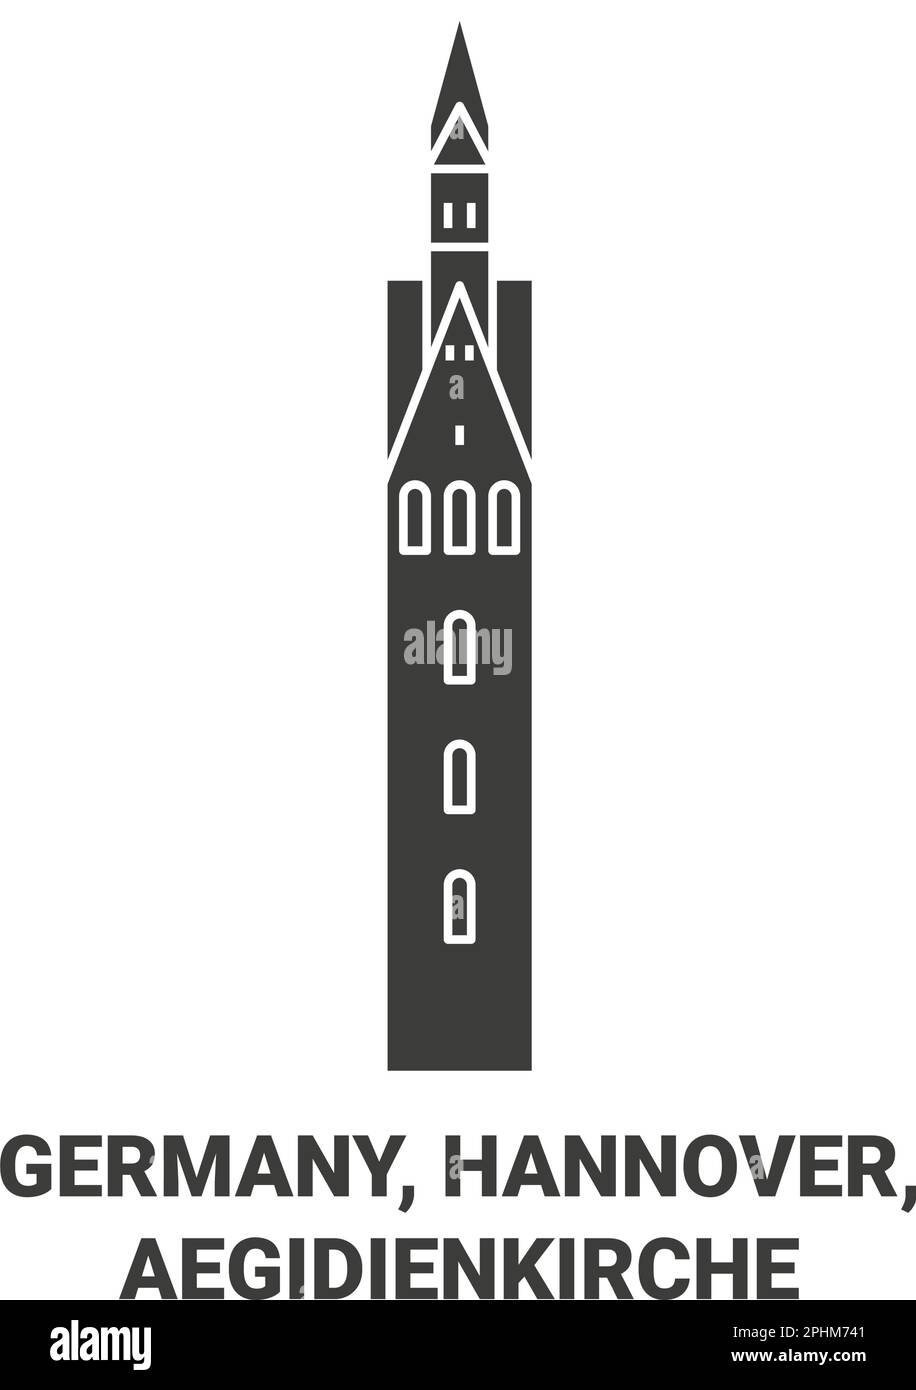 Deutschland, Hannover, Aegidienkirche reisen als Vektorbild Stock Vektor